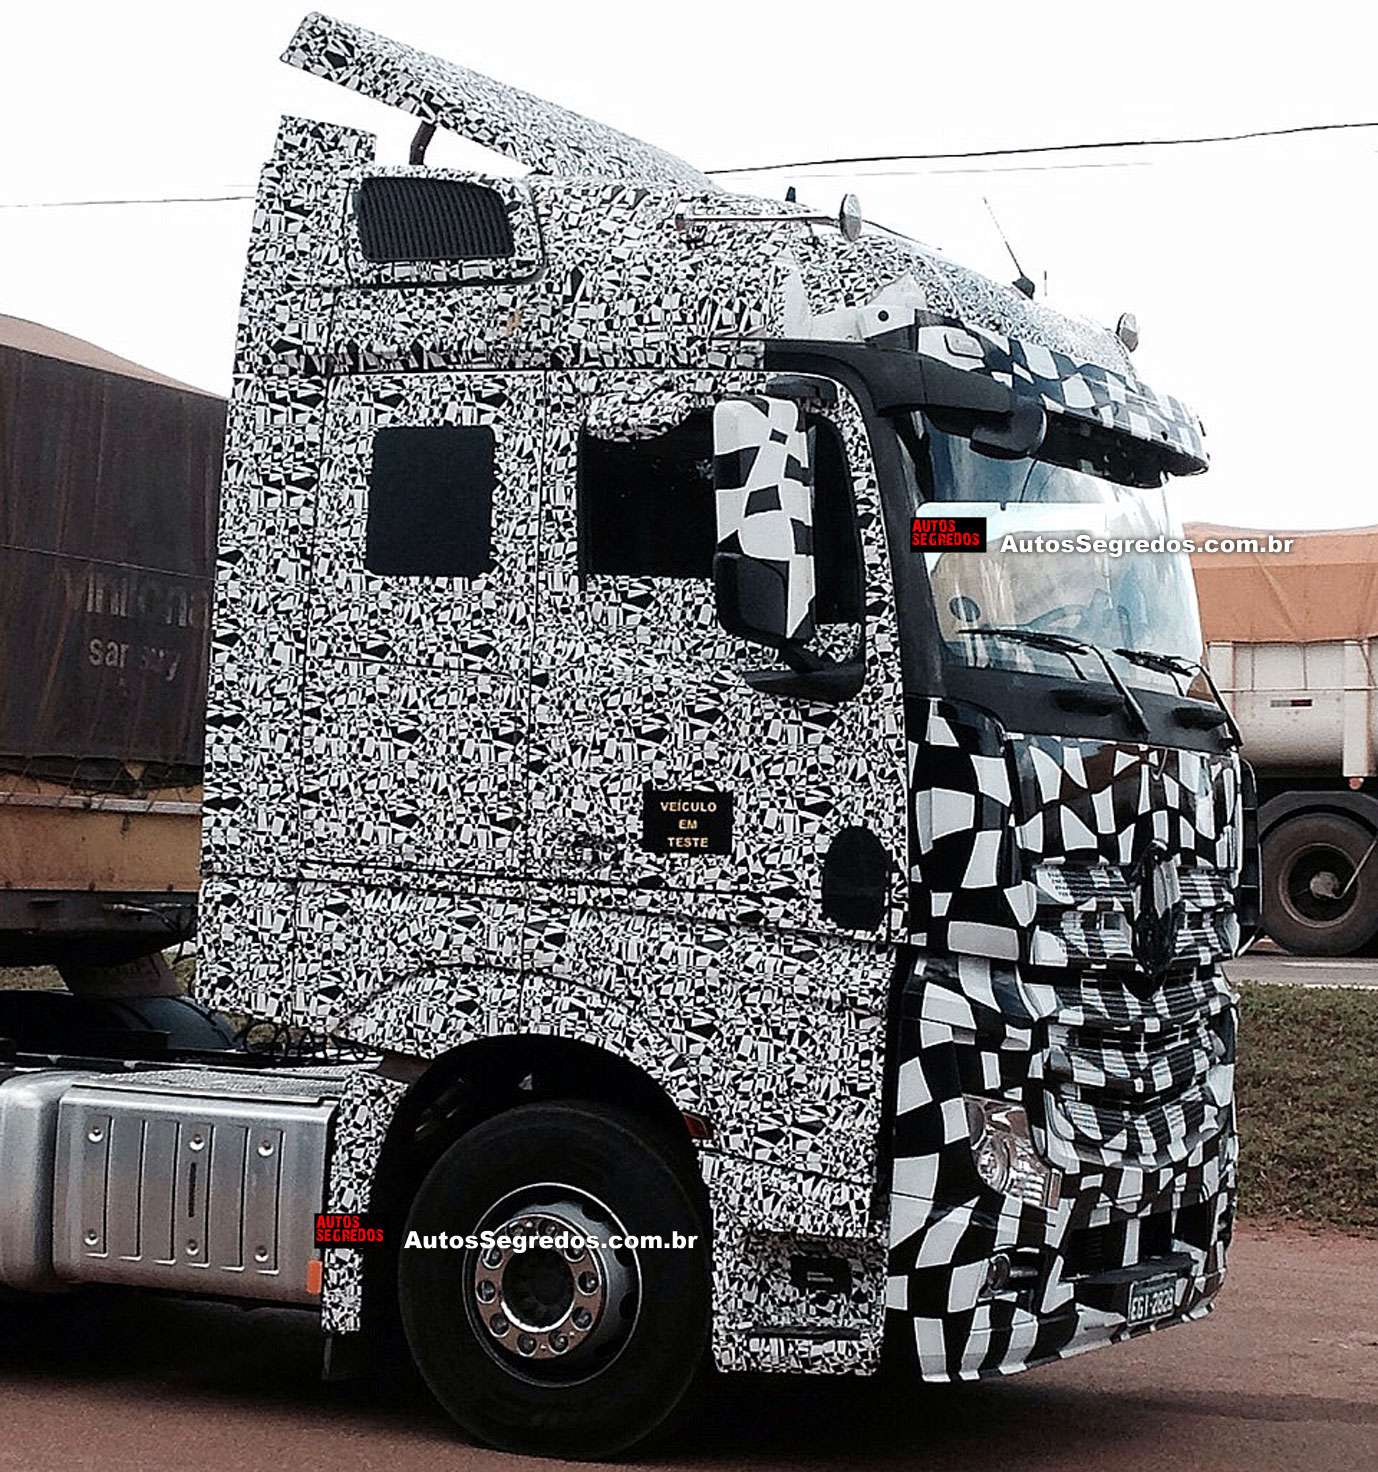 7 ideias de Caminhão top  caminhão, desenhos de caminhoes, como desenhar  caminhão